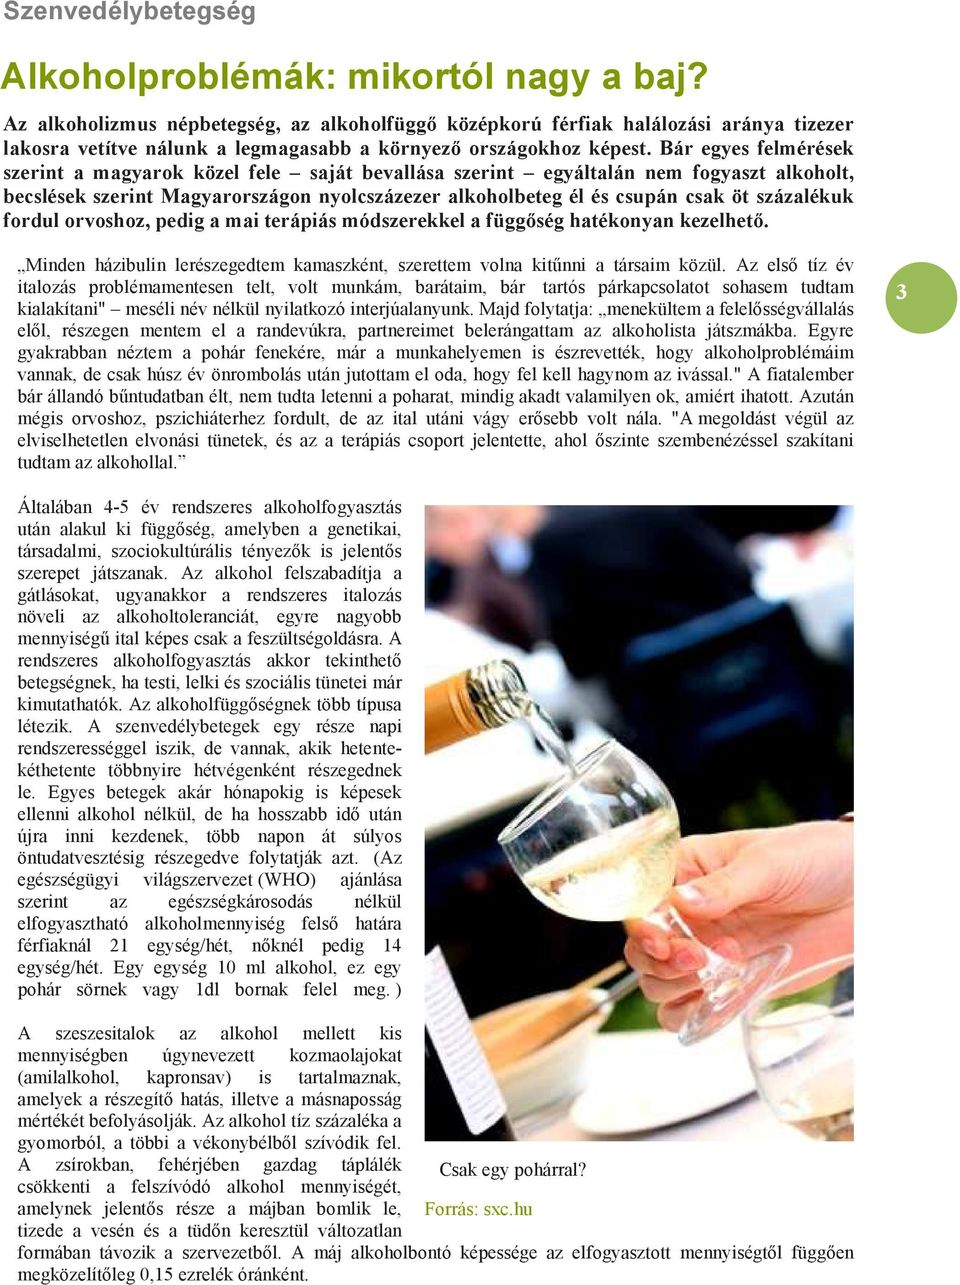 Bár egyes felmérések szerint a magyarok közel fele saját bevallása szerint egyáltalán nem fogyaszt alkoholt, becslések szerint Magyarországon nyolcszázezer alkoholbeteg él és csupán csak öt